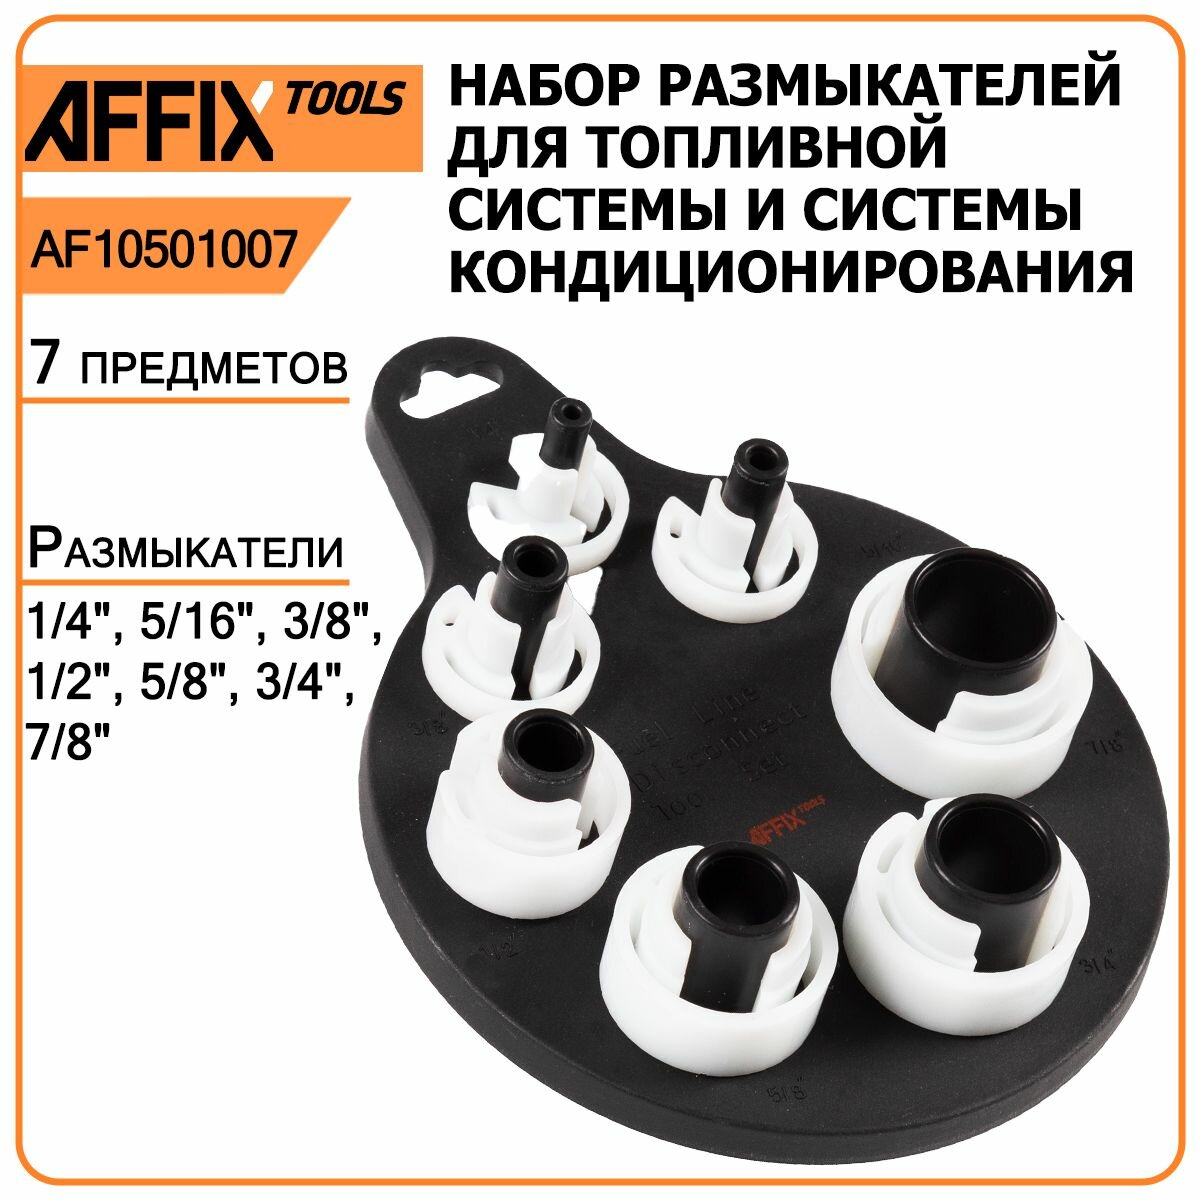 Набор размыкателей для топливной системы и системы кондиционирования AFFIX AF10501007 7 предметов демонтаж быстросъёмных соединений